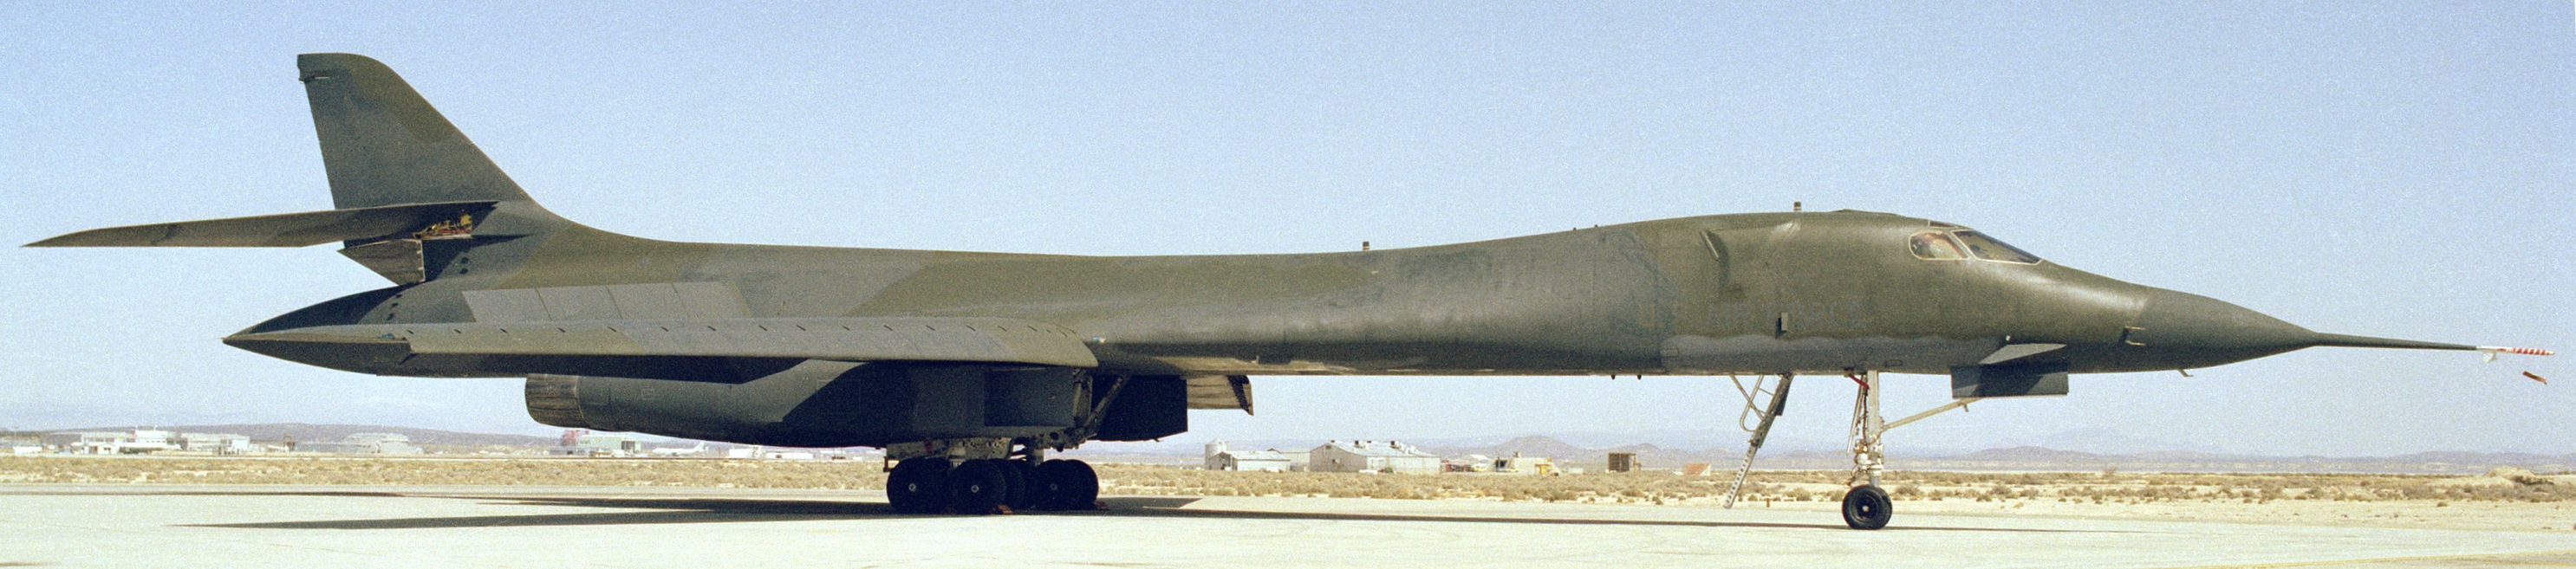 B-1B修長的機身